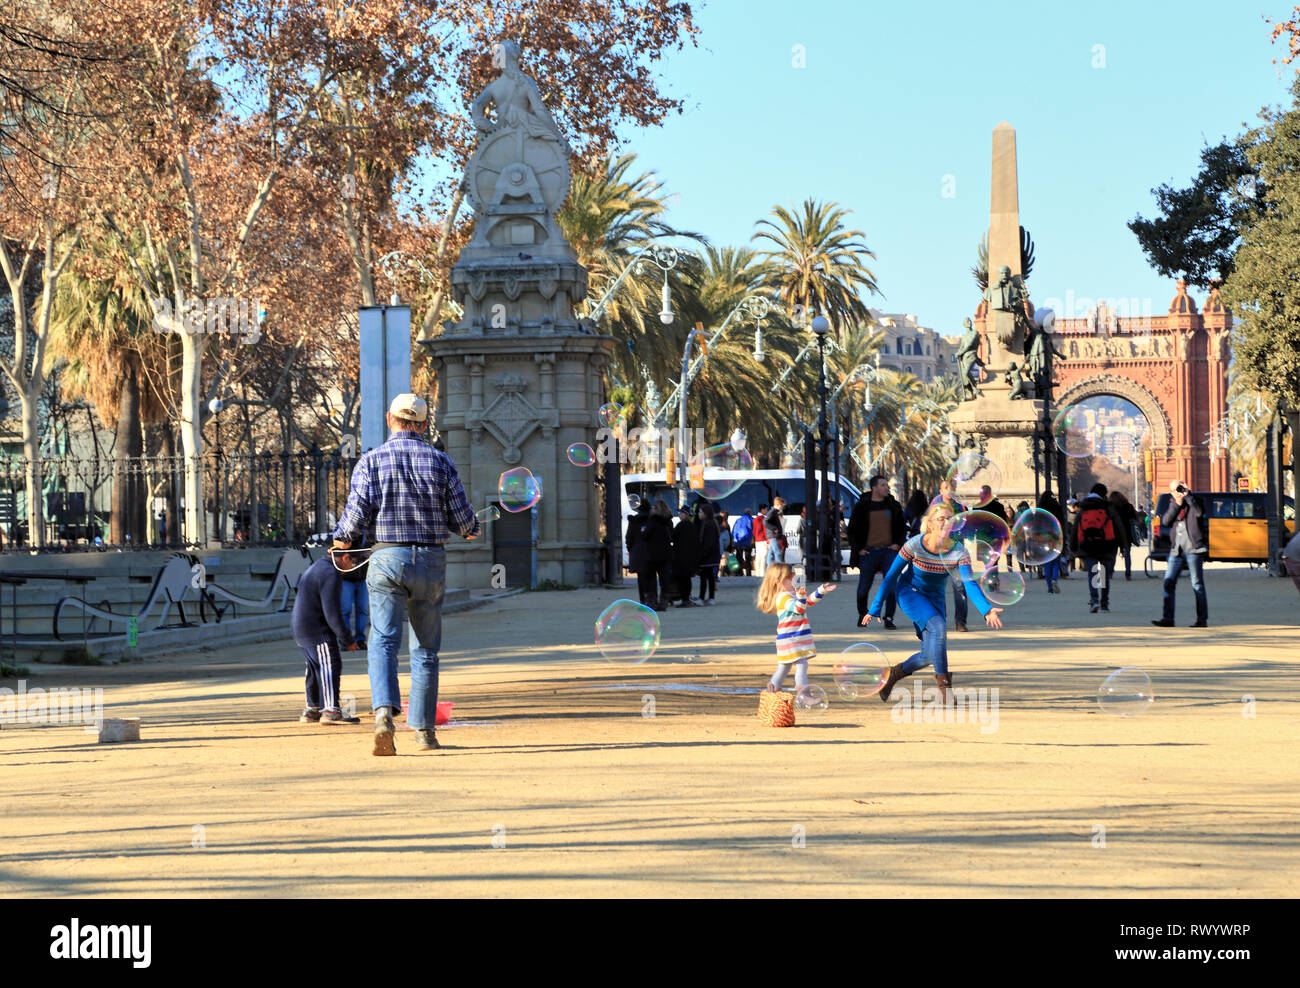 Bulle de savon artiste de rue, performances, Arco de Triunfo, Passeig de Lluís Companys, Parc de la Ciutadella, Barcelone Banque D'Images